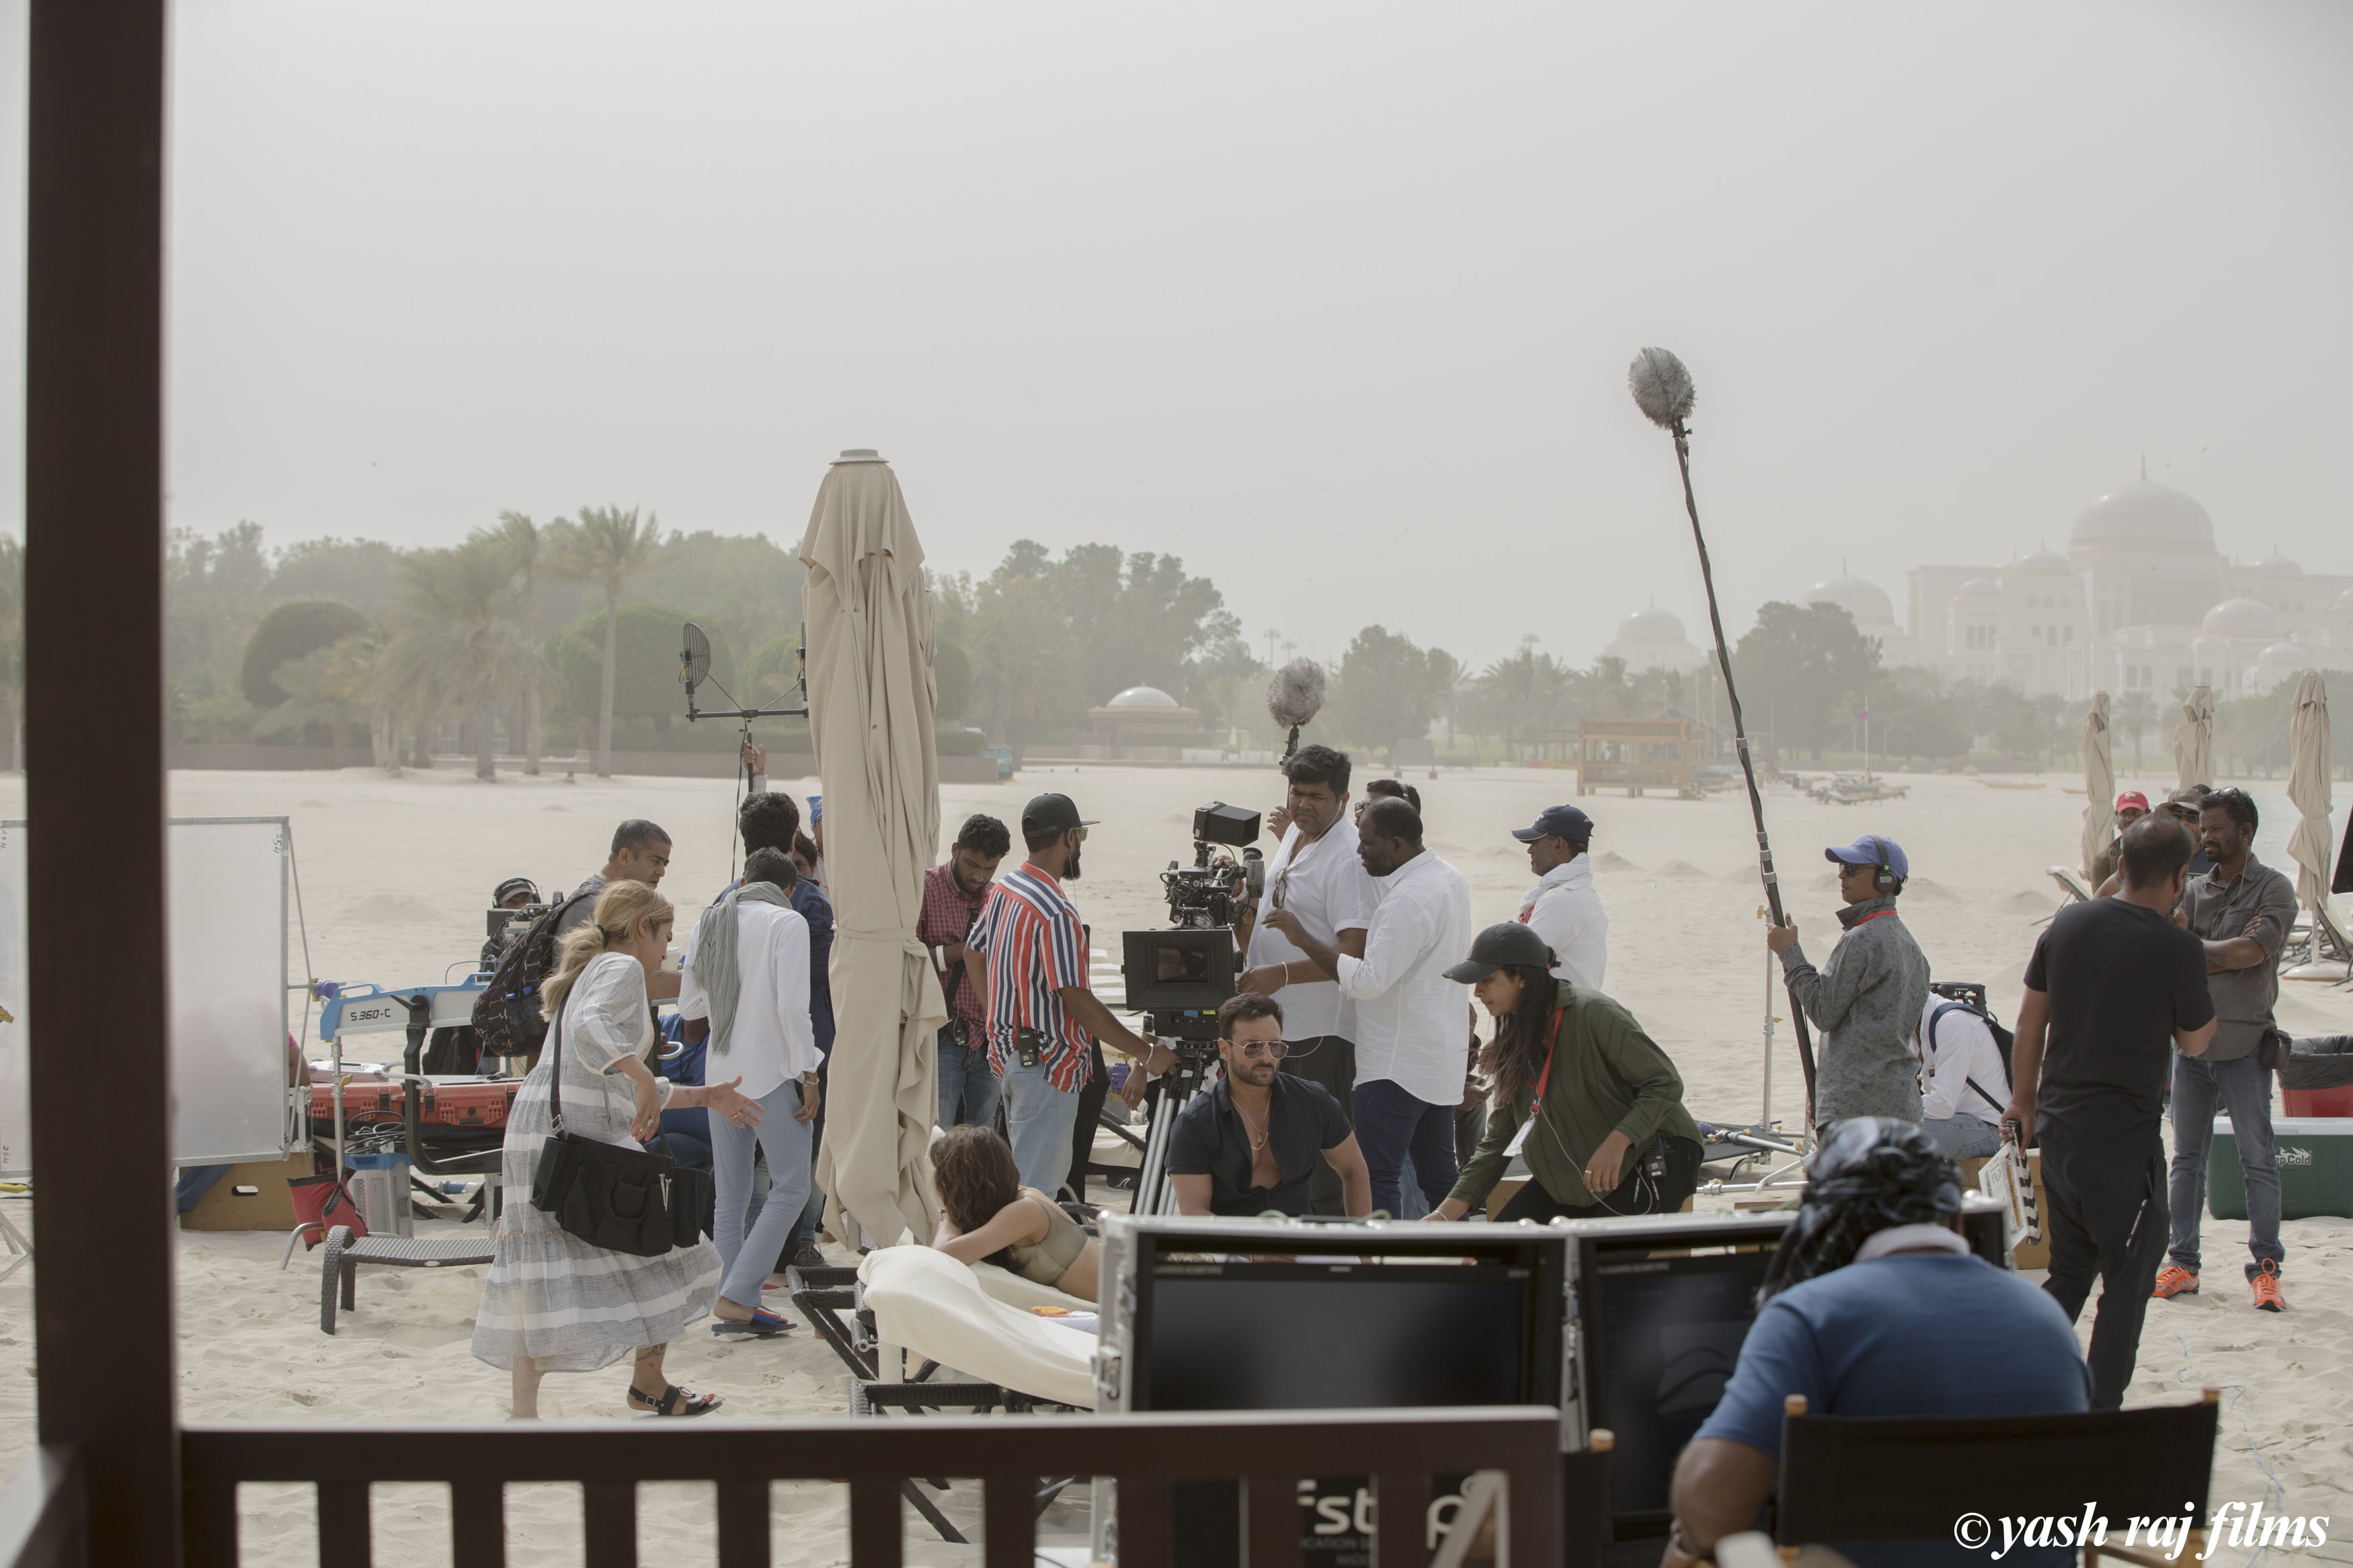 Abu Dhabi Film Commission